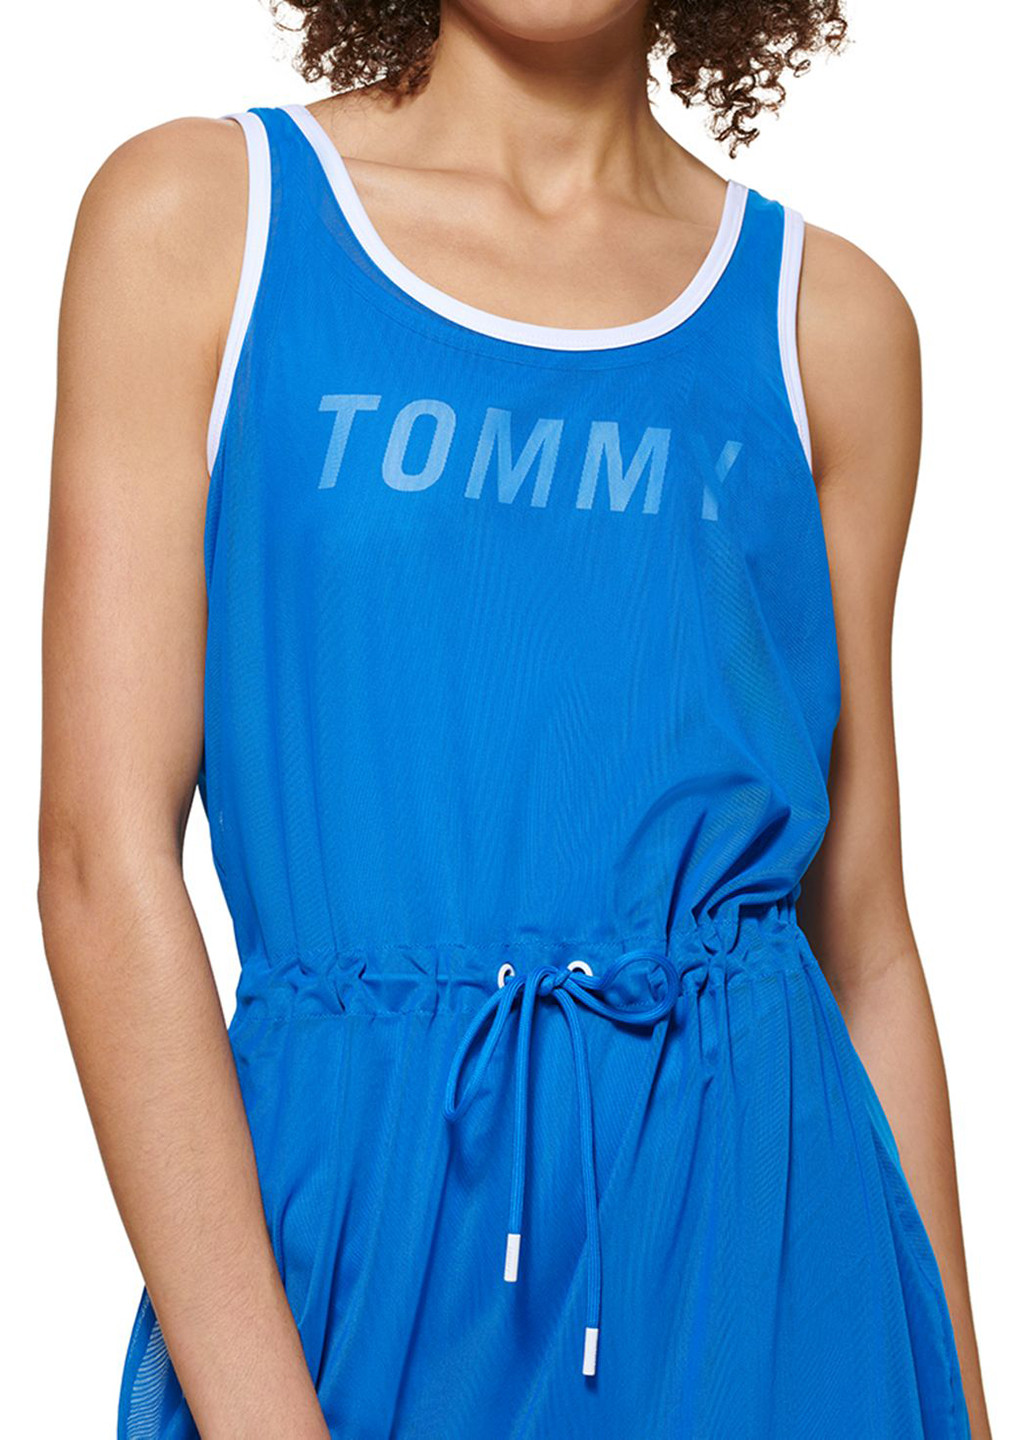 Комбінезон Tommy Hilfiger комбінезон-брюки логотип синій спортивний поліестер